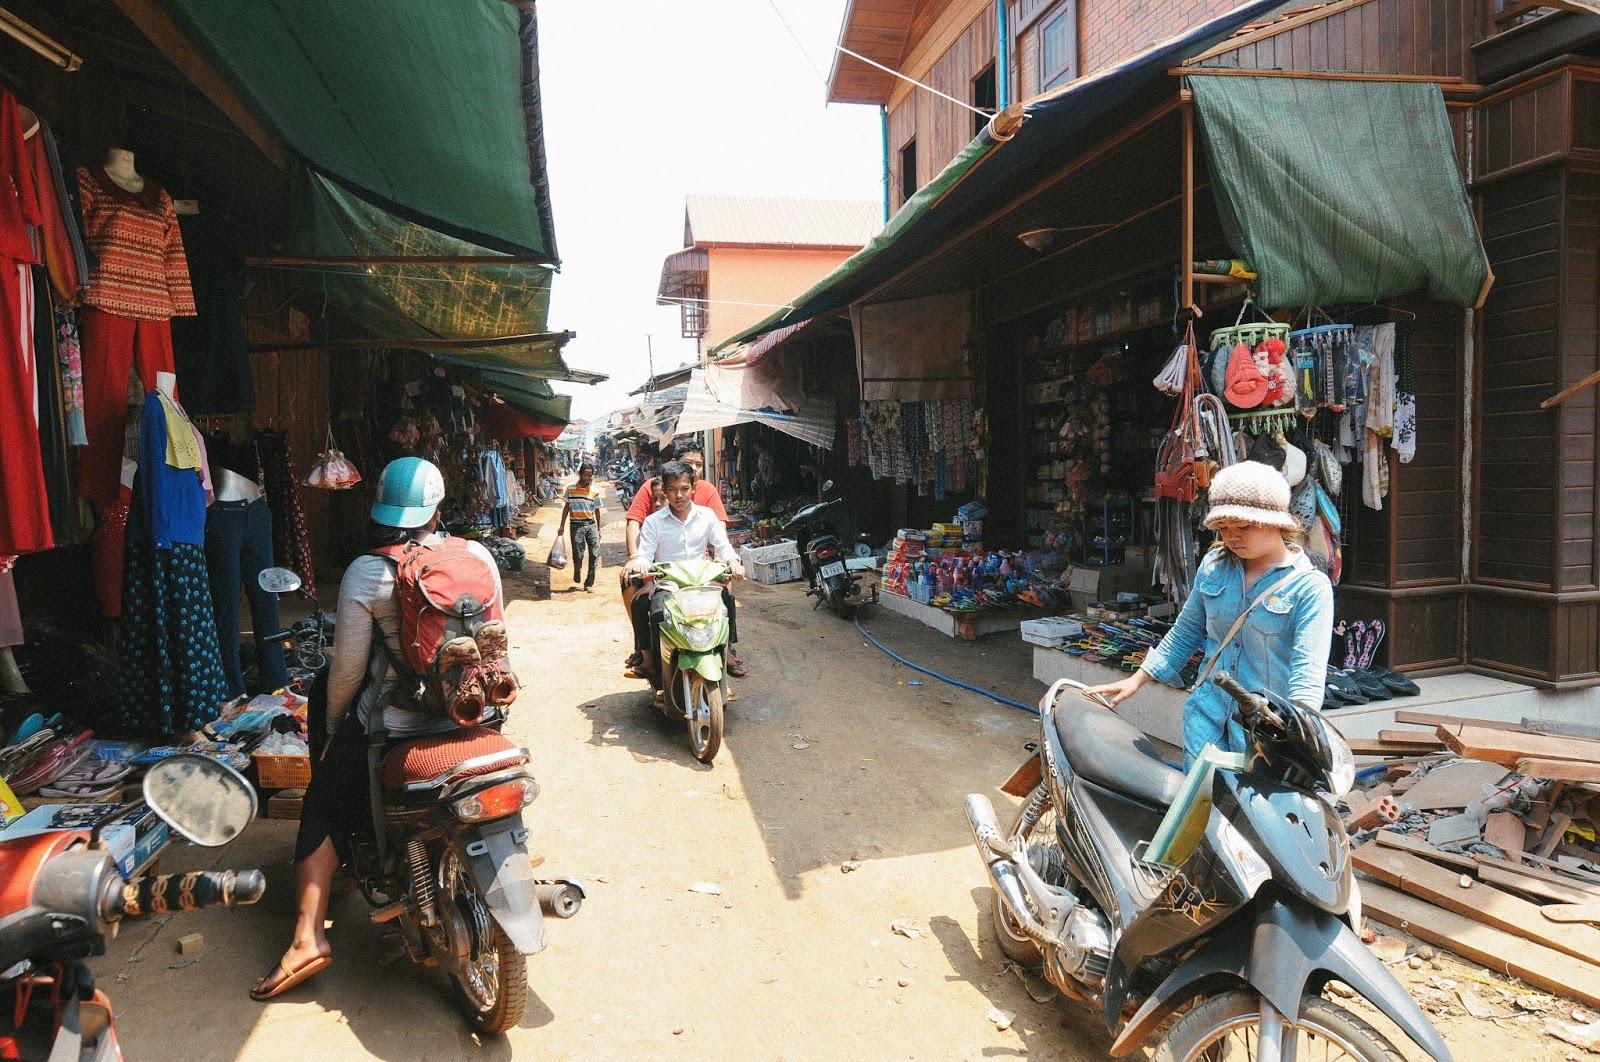 On the road 12: La fin, retour à Kampong Cham